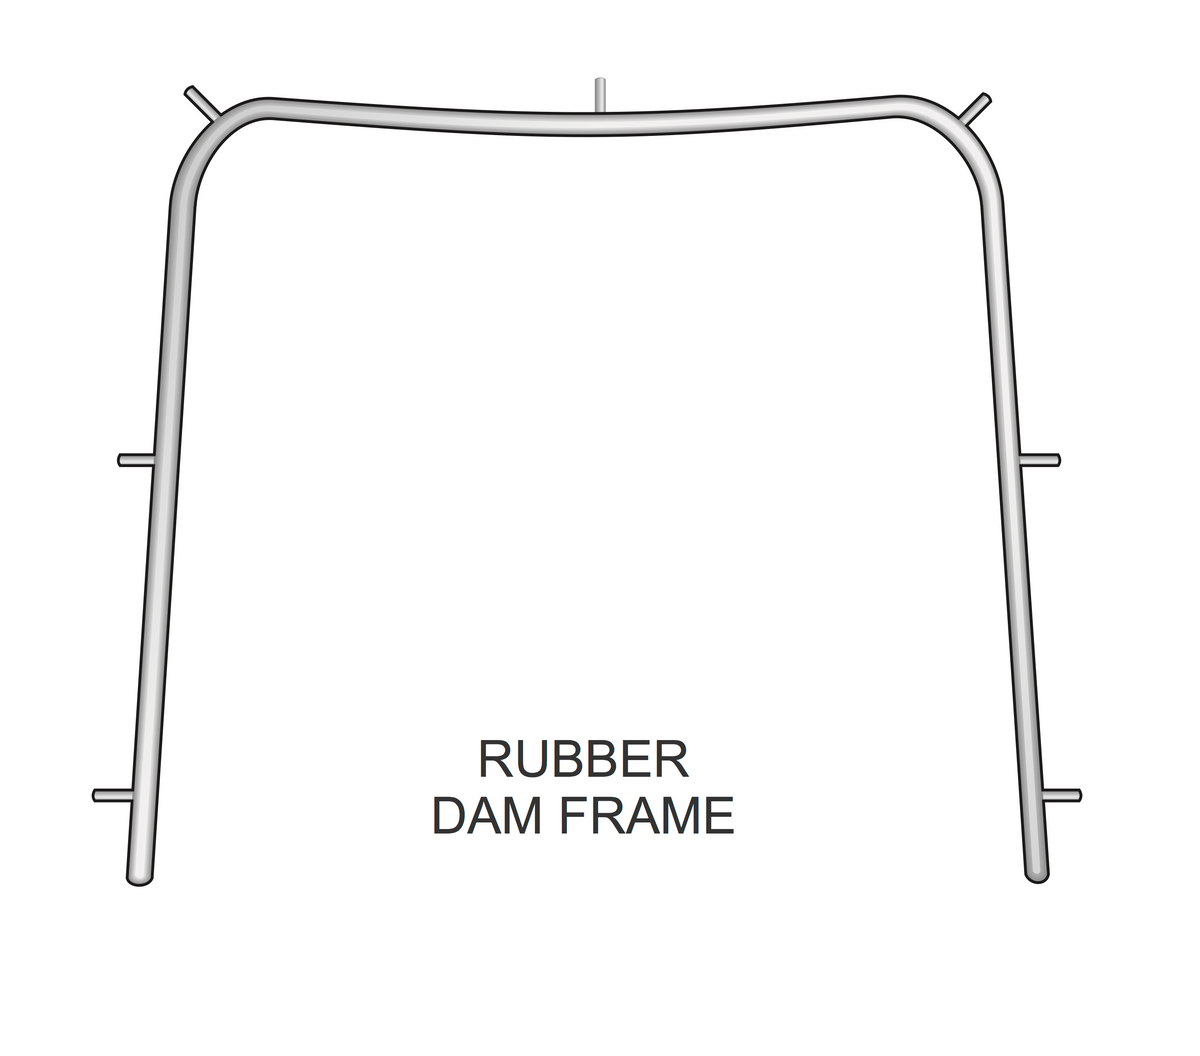 Adult, 6 inch/15CM Rubber Dam Frame - HiTeck Medical Instruments